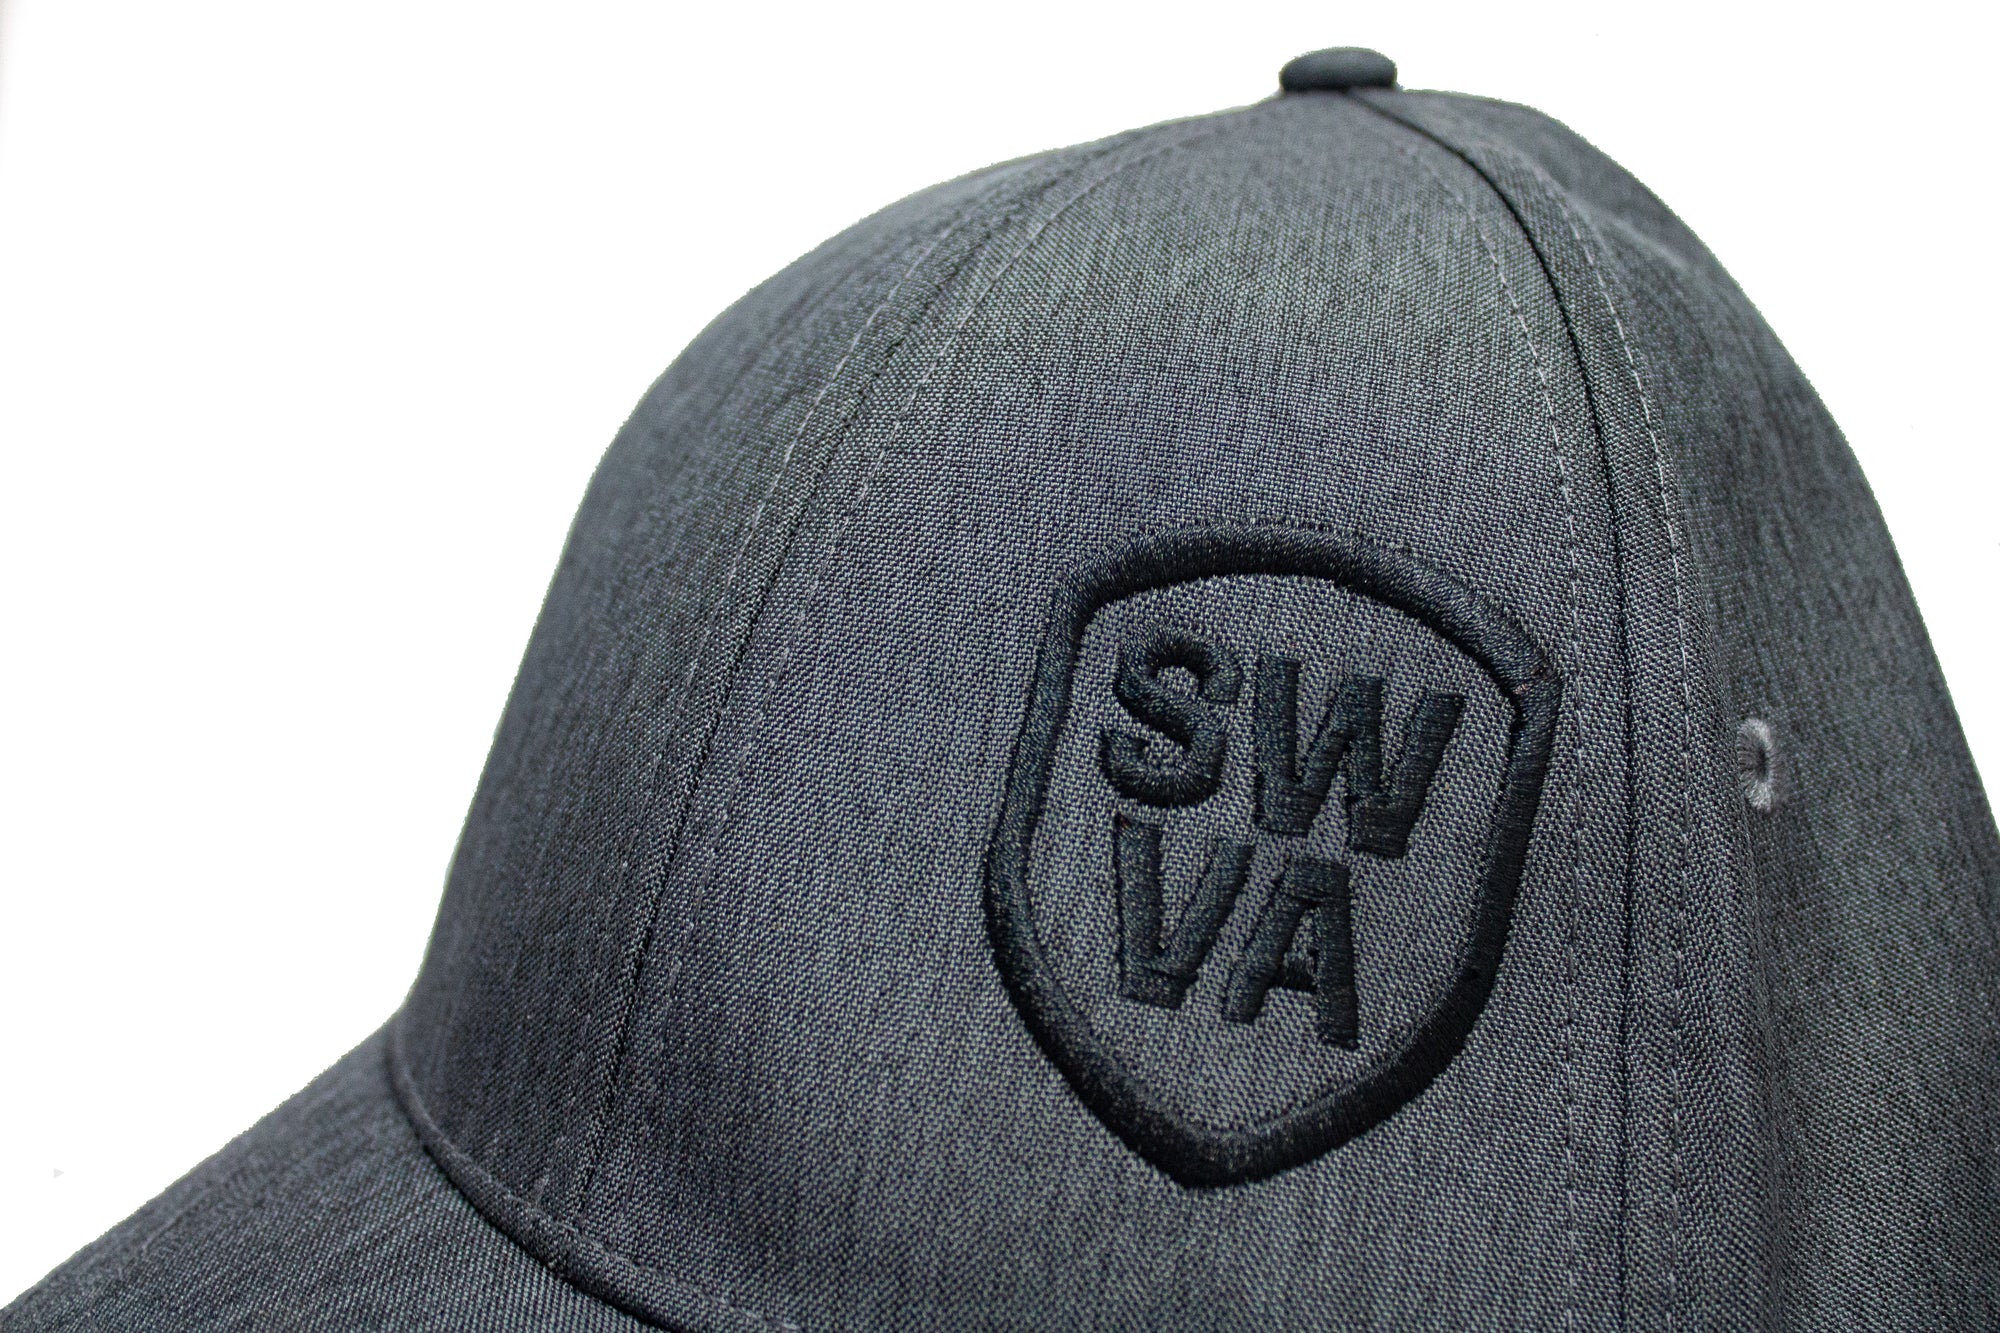 SWVA Linen Side Badge Hat